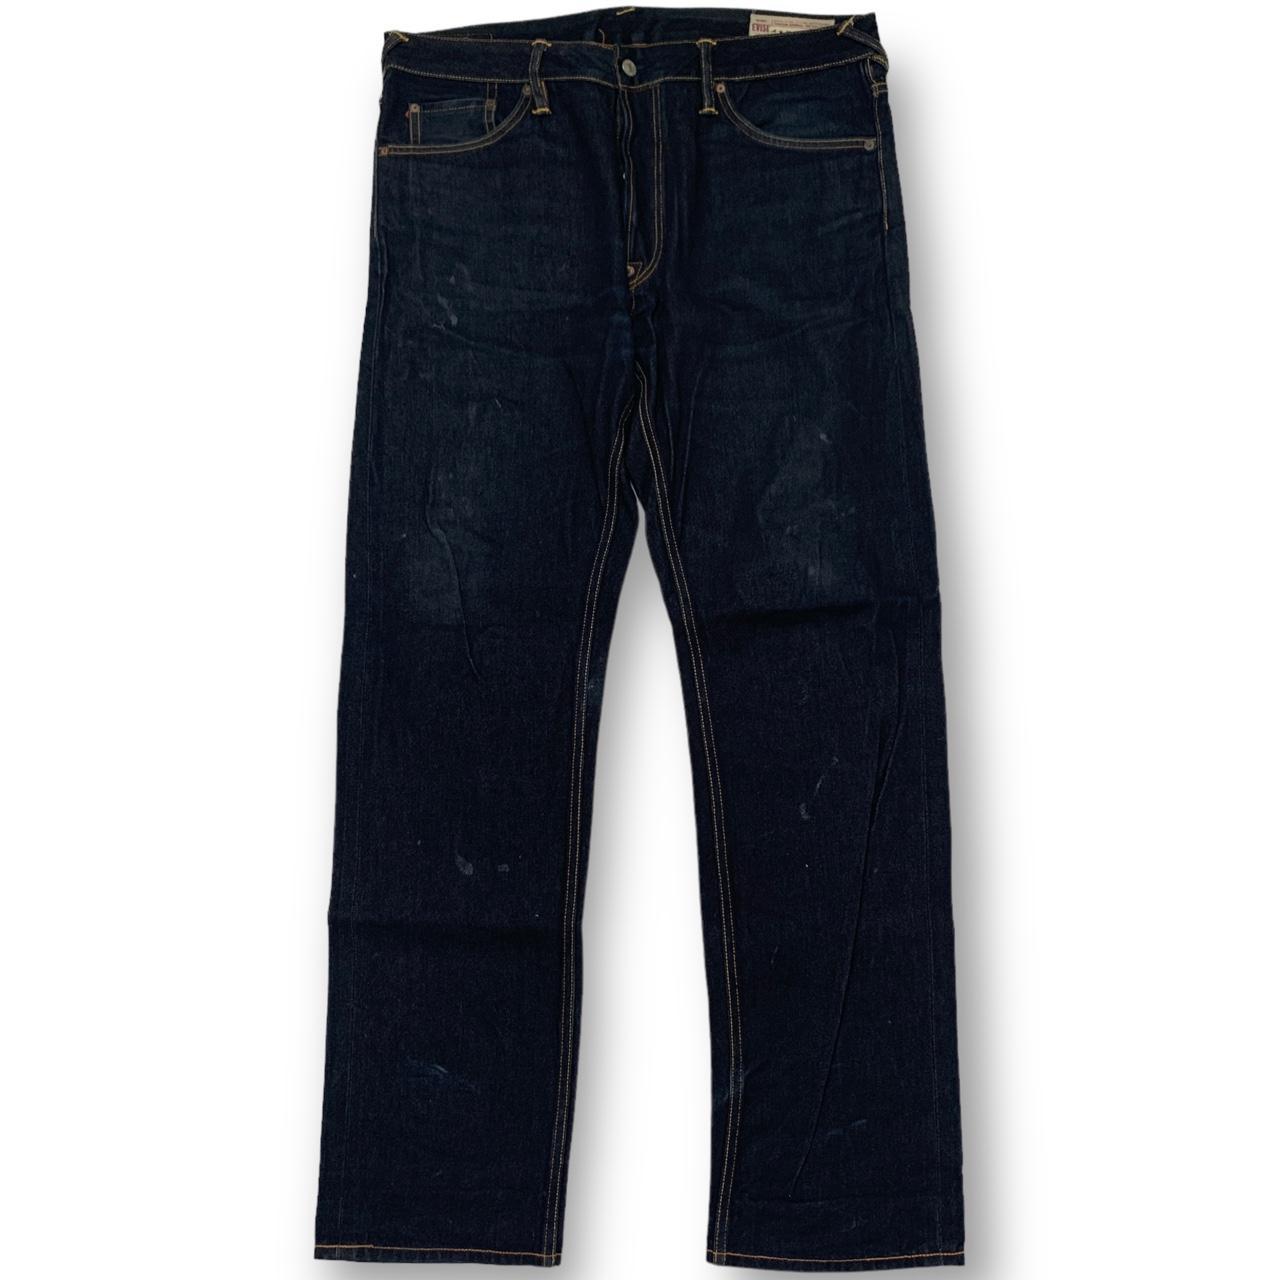 Evisu Multipocket Jeans (36)